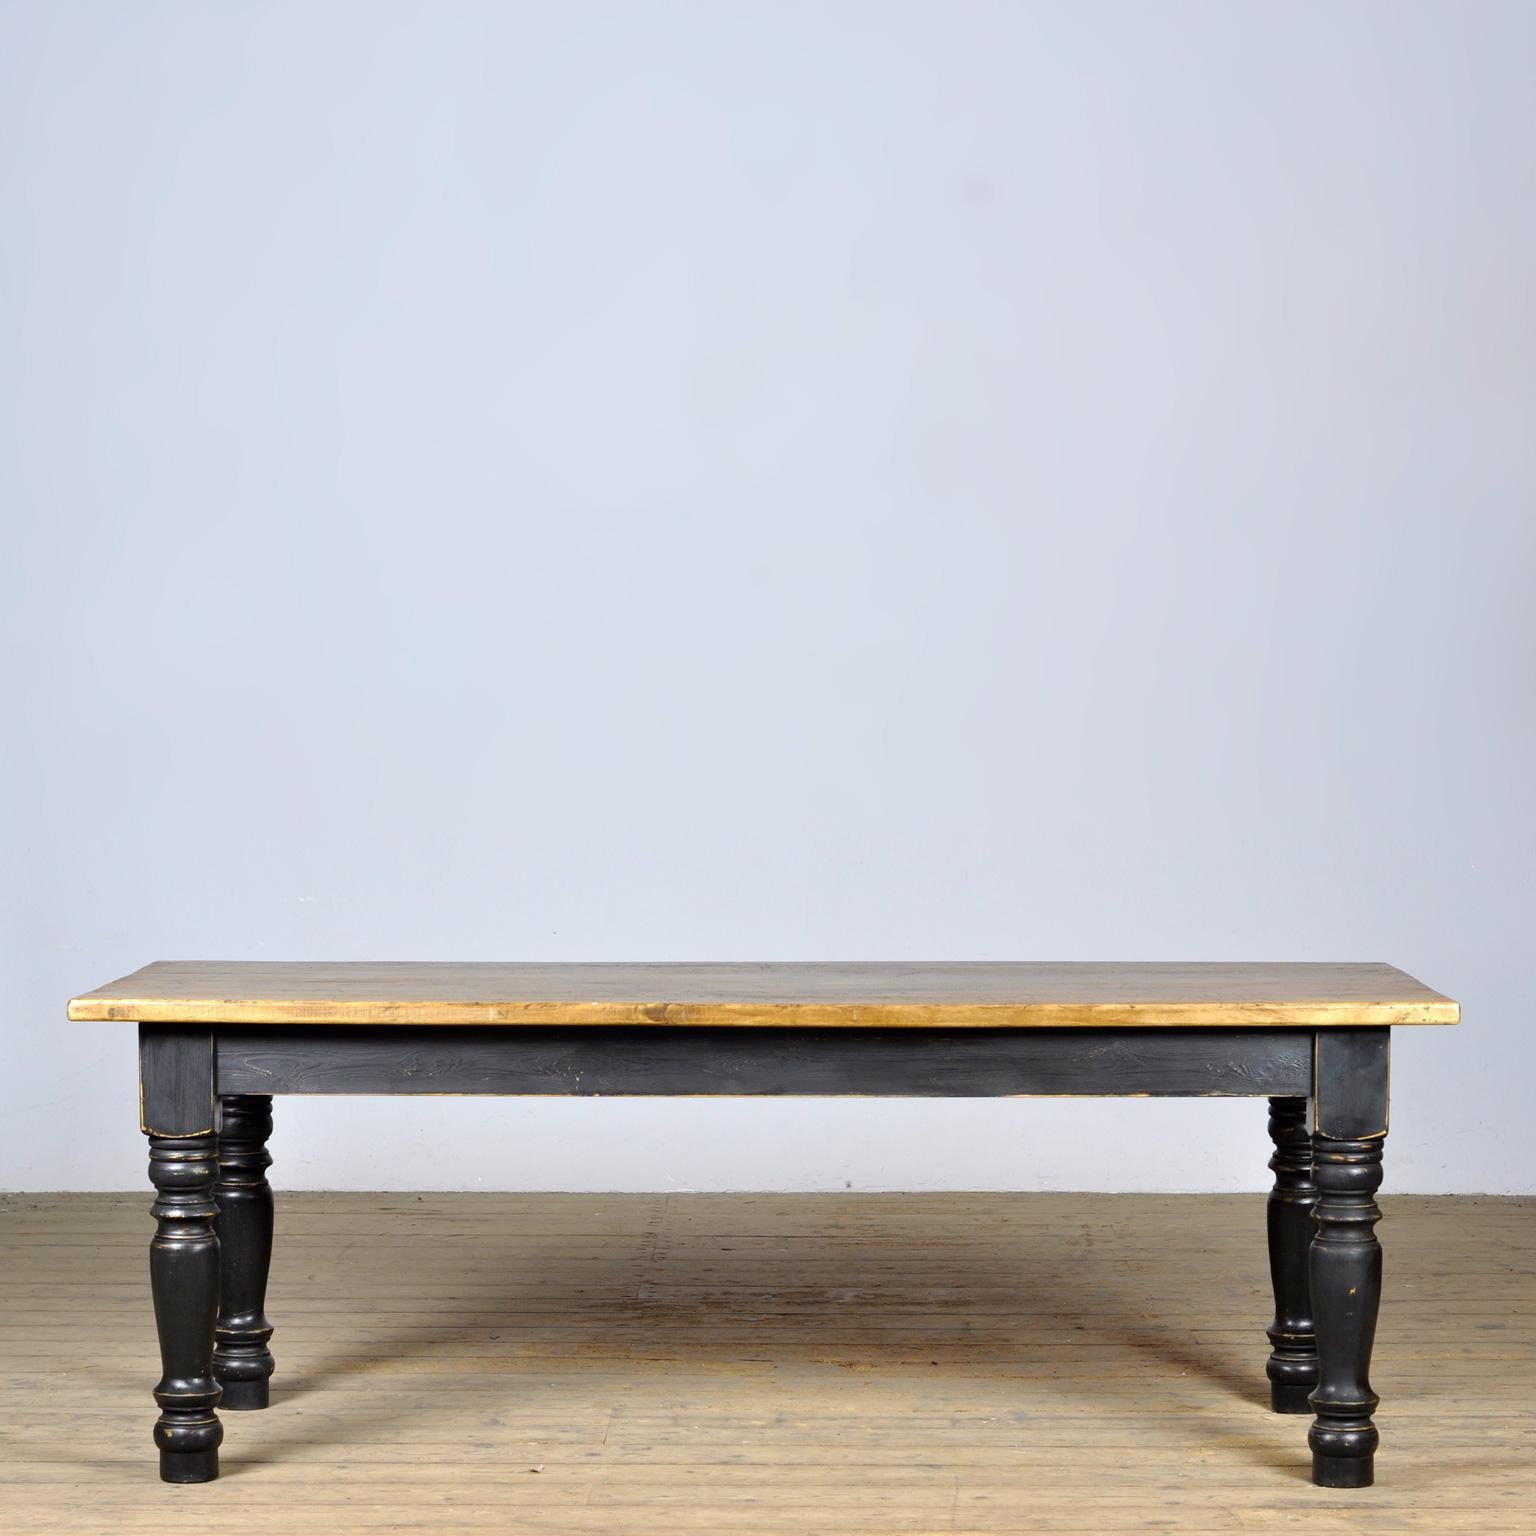 La table de la ferme avec un beau dessus en relief. Le plateau a été fabriqué vers 1920. Les jambes sont neuves. La table peut accueillir 6 à 8 personnes.